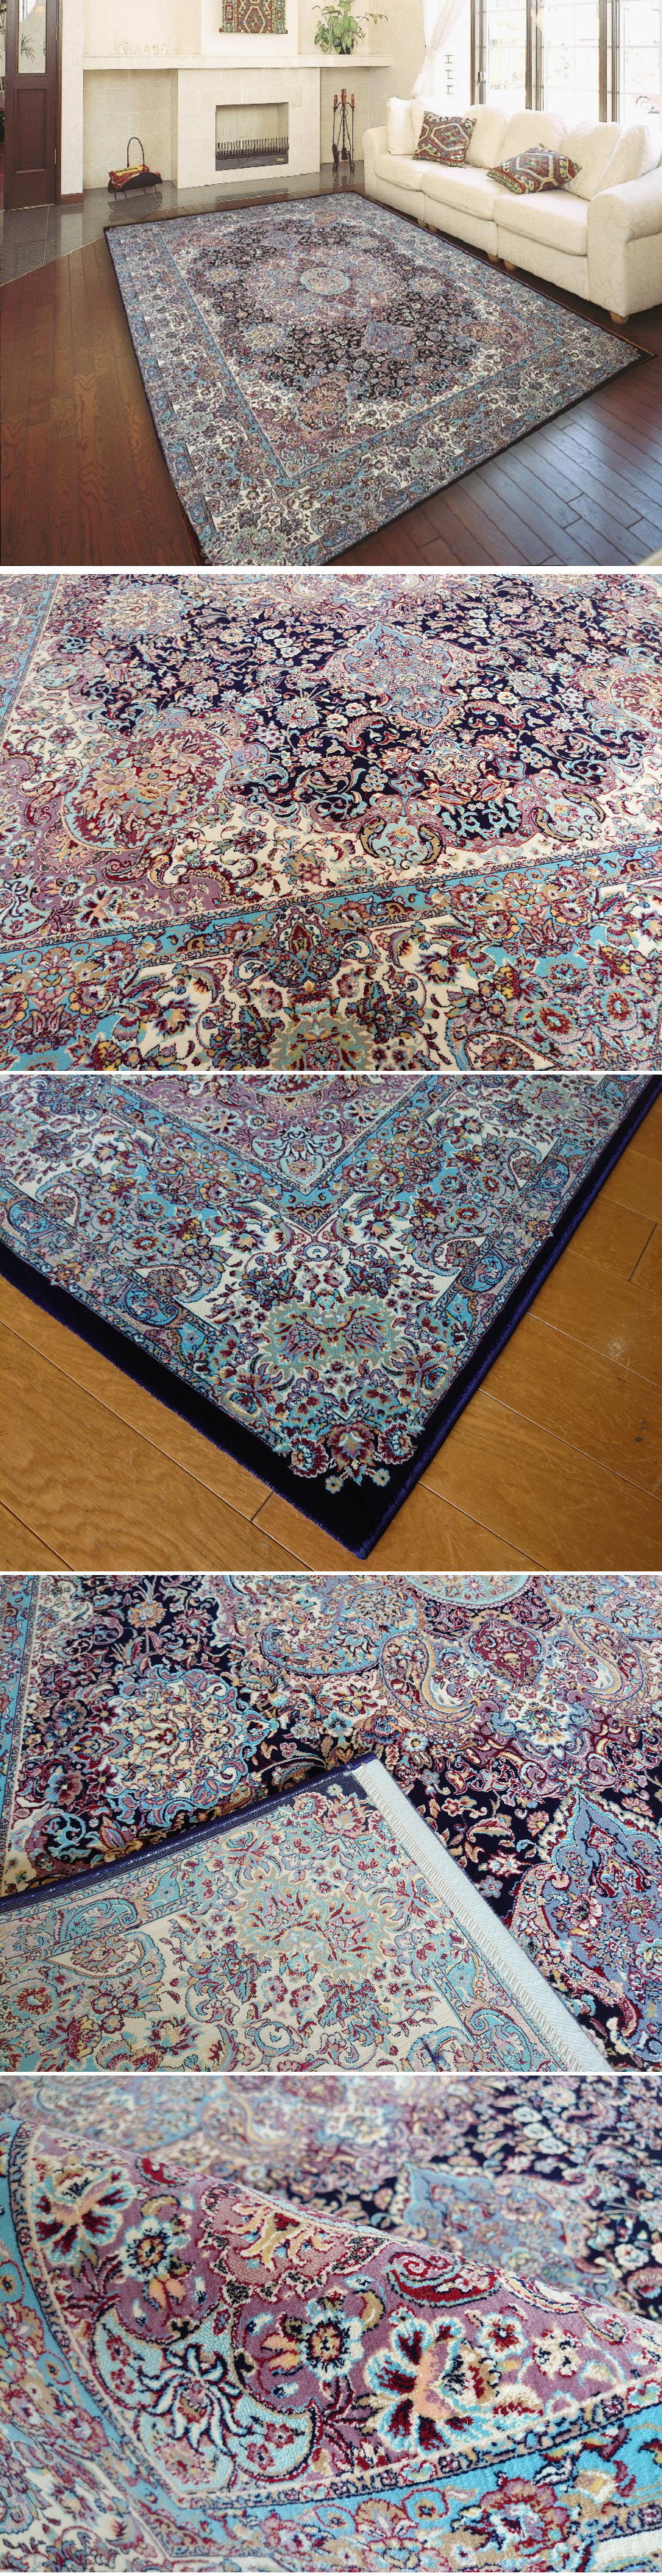 超激得即納252N2 最高級品 芸術品レベル 144万ノット 200×250 エジプト産 ウィルトン織 カーペット 絨毯 エレガント カーペット一般